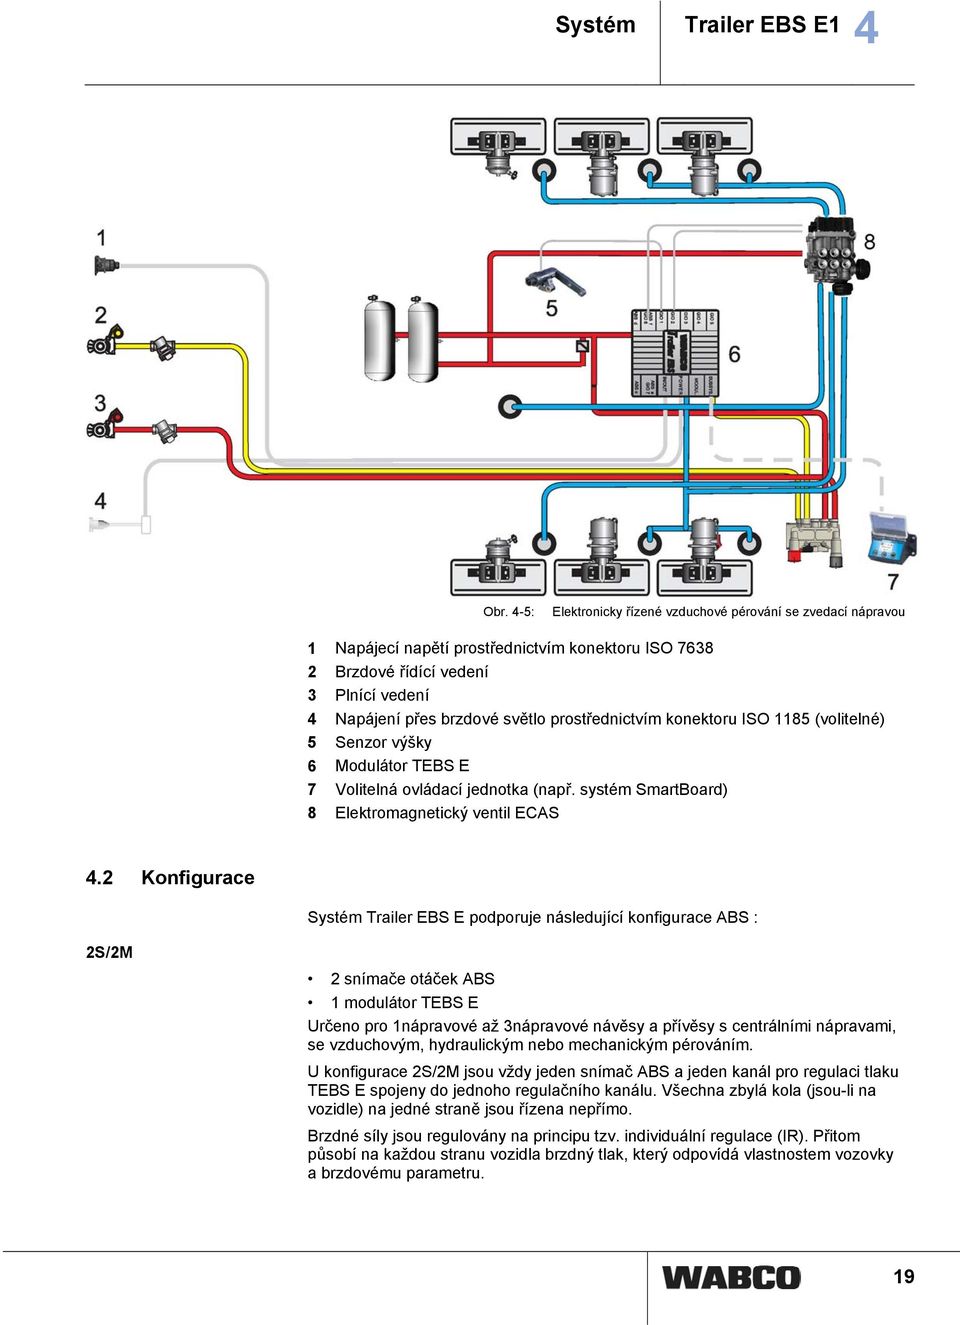 prostřednictvím konektoru ISO 1185 (volitelné) 5 Senzor výšky 6 Modulátor TEBS E 7 Volitelná ovládací jednotka (např. systém SmartBoard) 8 Elektromagnetický ventil ECAS 4.